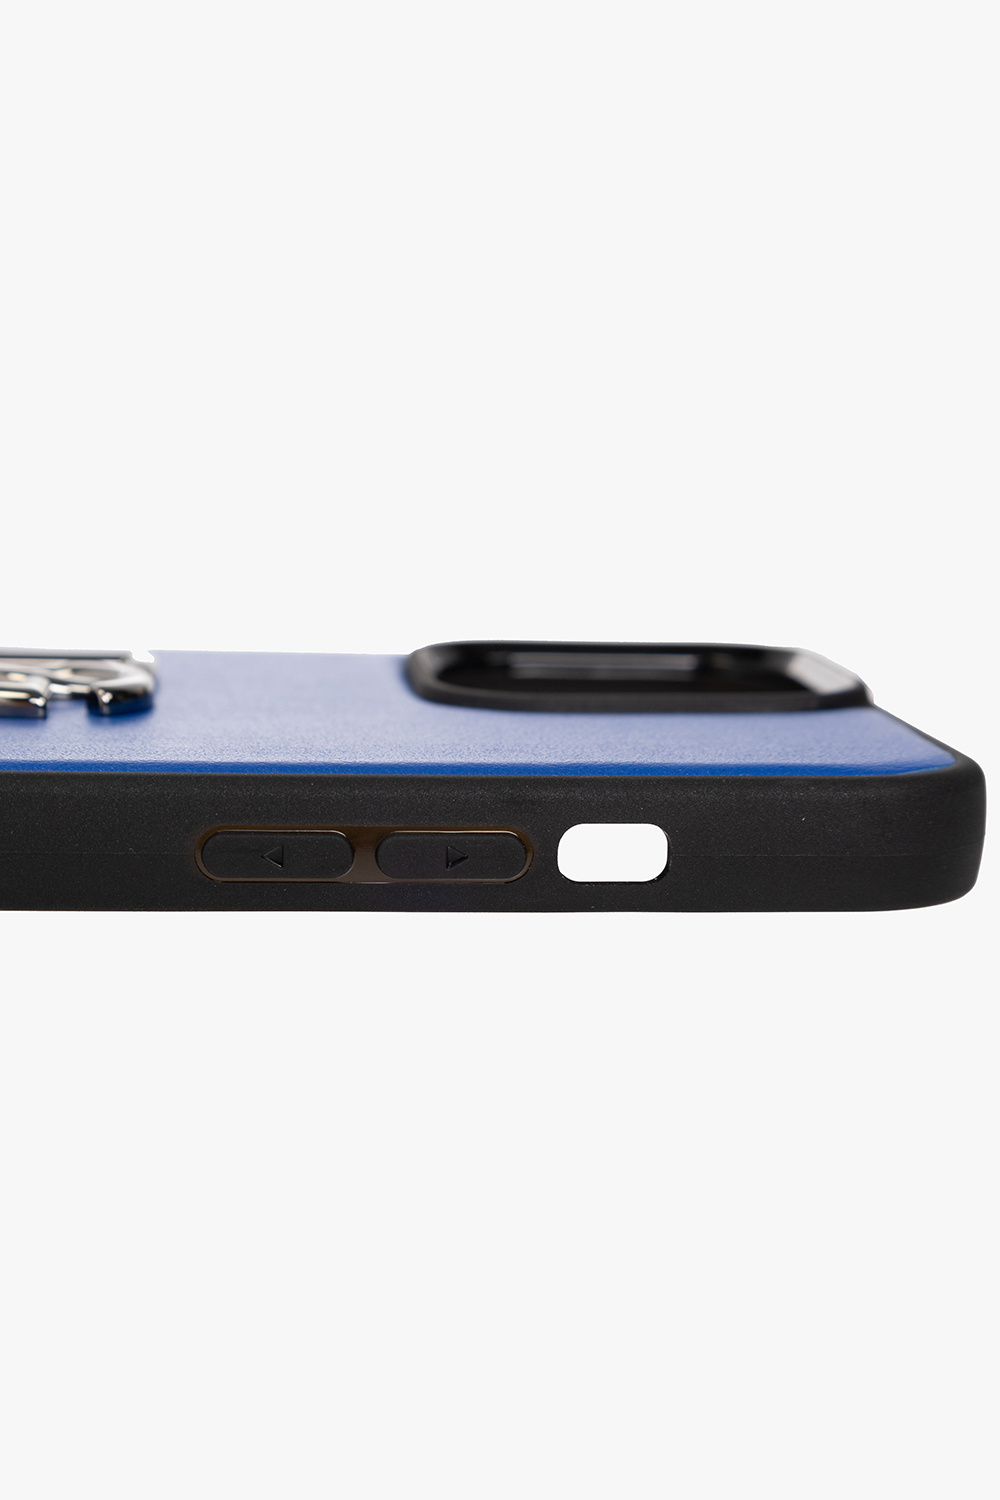 LV Blue Art iPhone 14 Pro Max Case by DG Design - Pixels